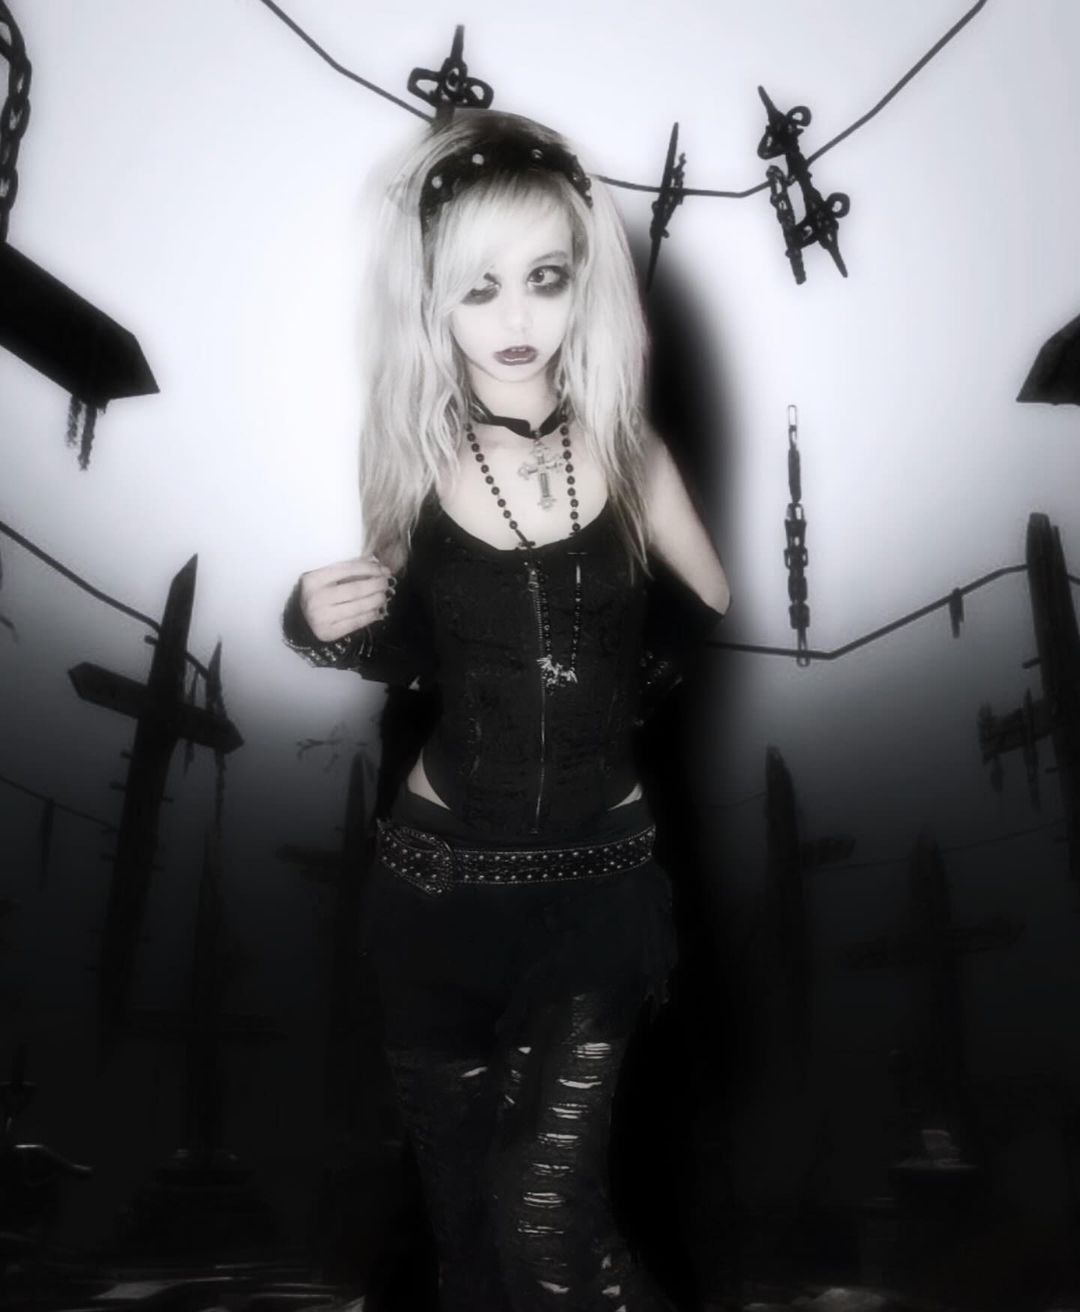 goth princess🖤 (im not goth)

#shasilo #shasiloswirl #alt#alternative #altmodel #altfashion #altgirl
#gothfashion #goth #gothic